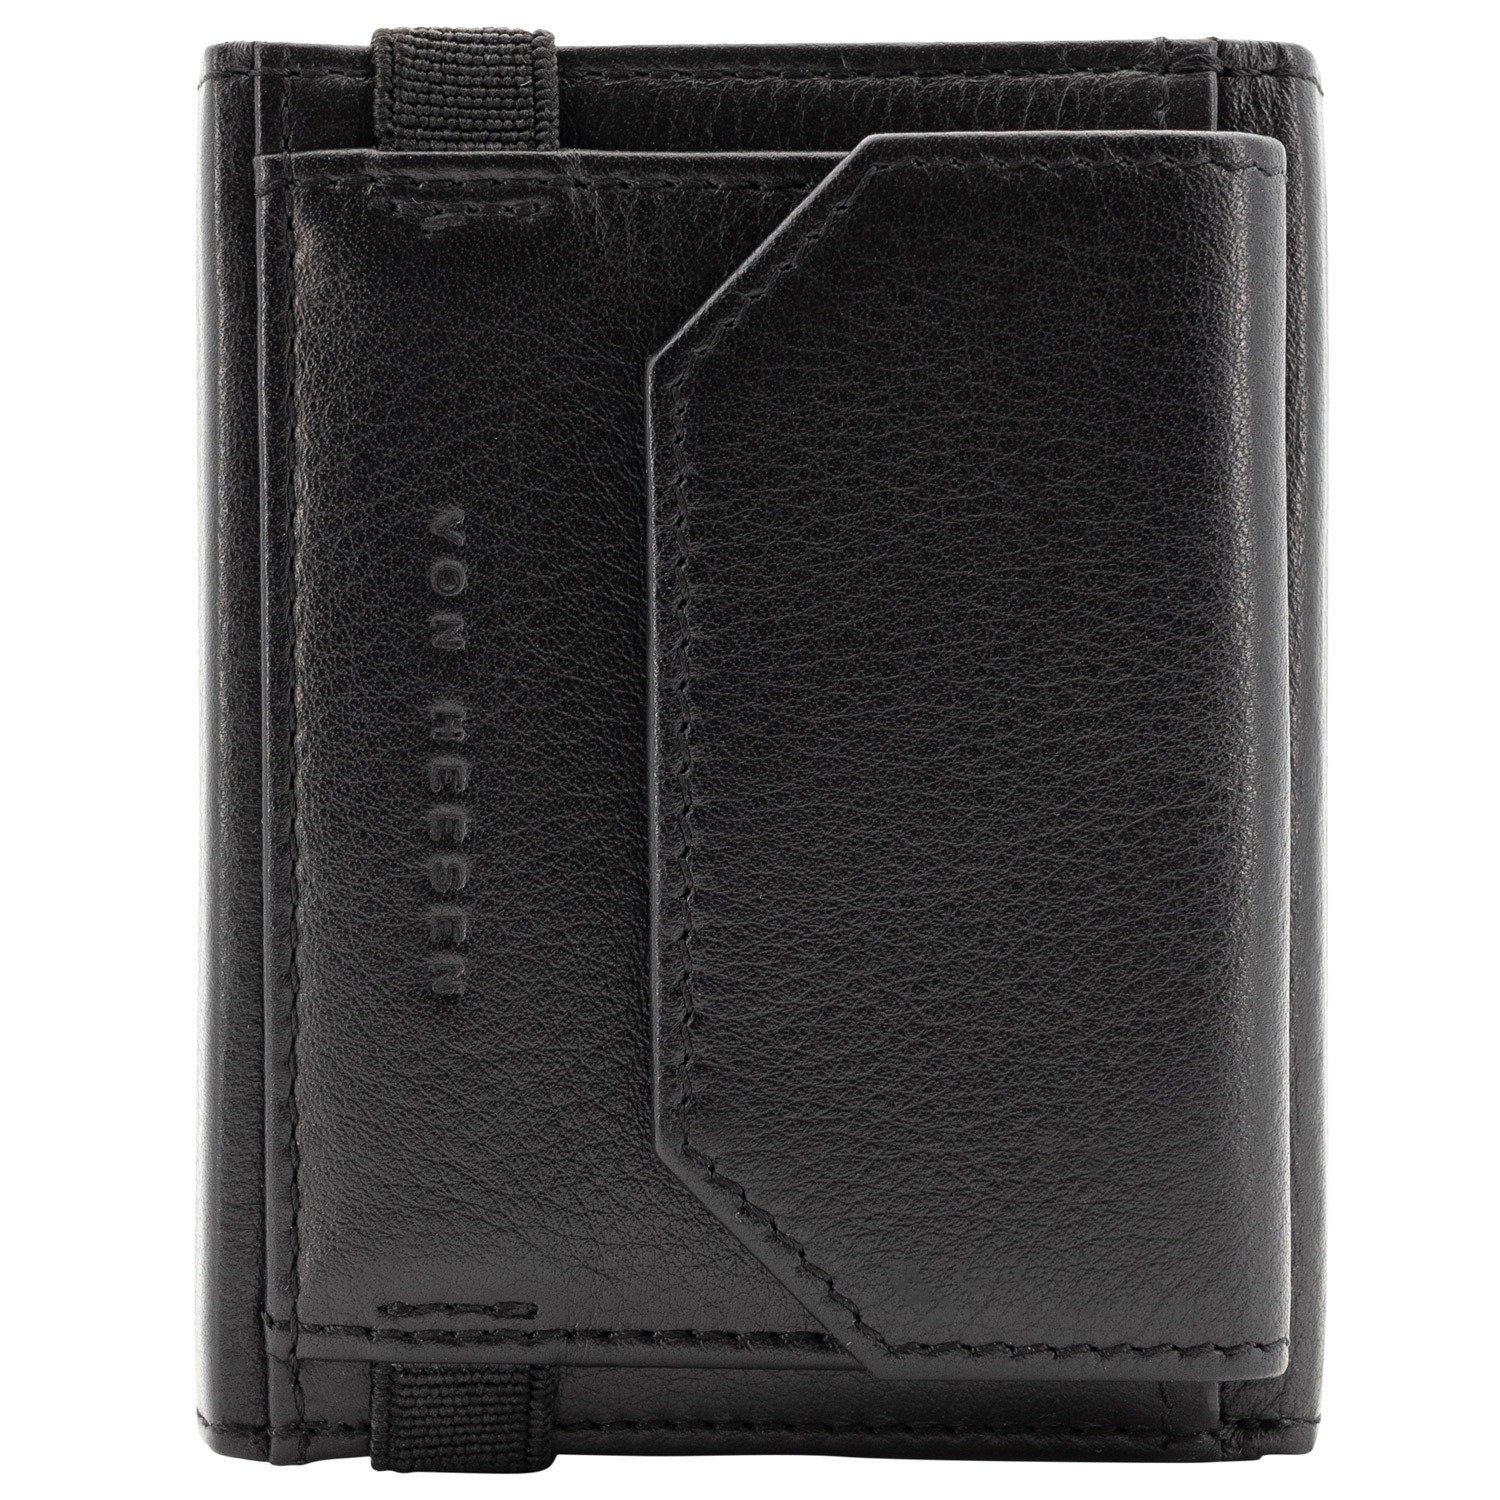 Portemonnaie Geschenkbox Geldbeutel (braun) inkl. Slim Wallet RFID-Schutz 5 mit Whizz Geldbörse & Wallet VON XL-Münzfach, Kartenfächer Leder Schwarz & HEESEN